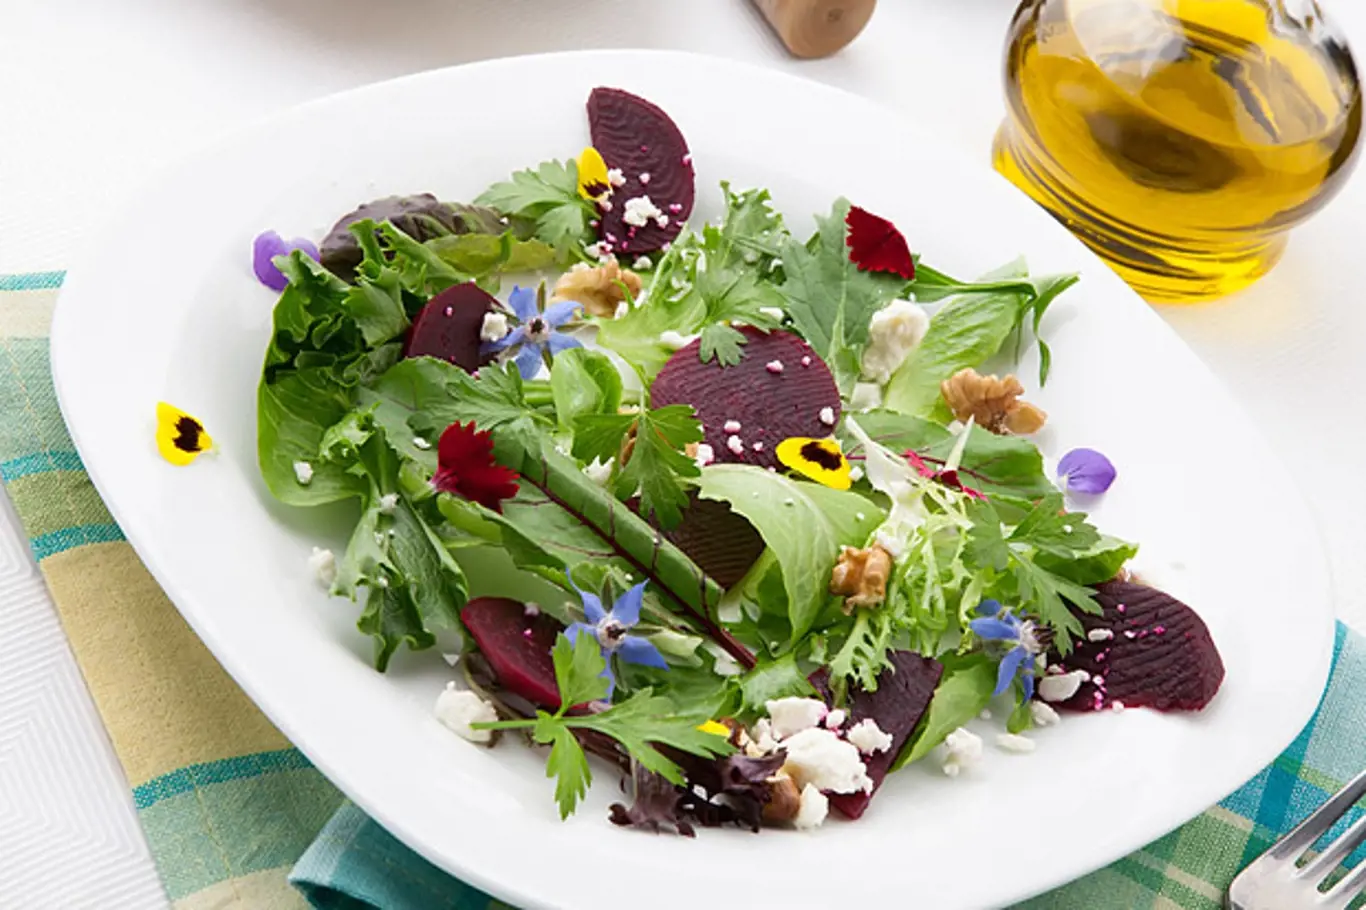 Jedlé květy promění salát v nevšední zážitek